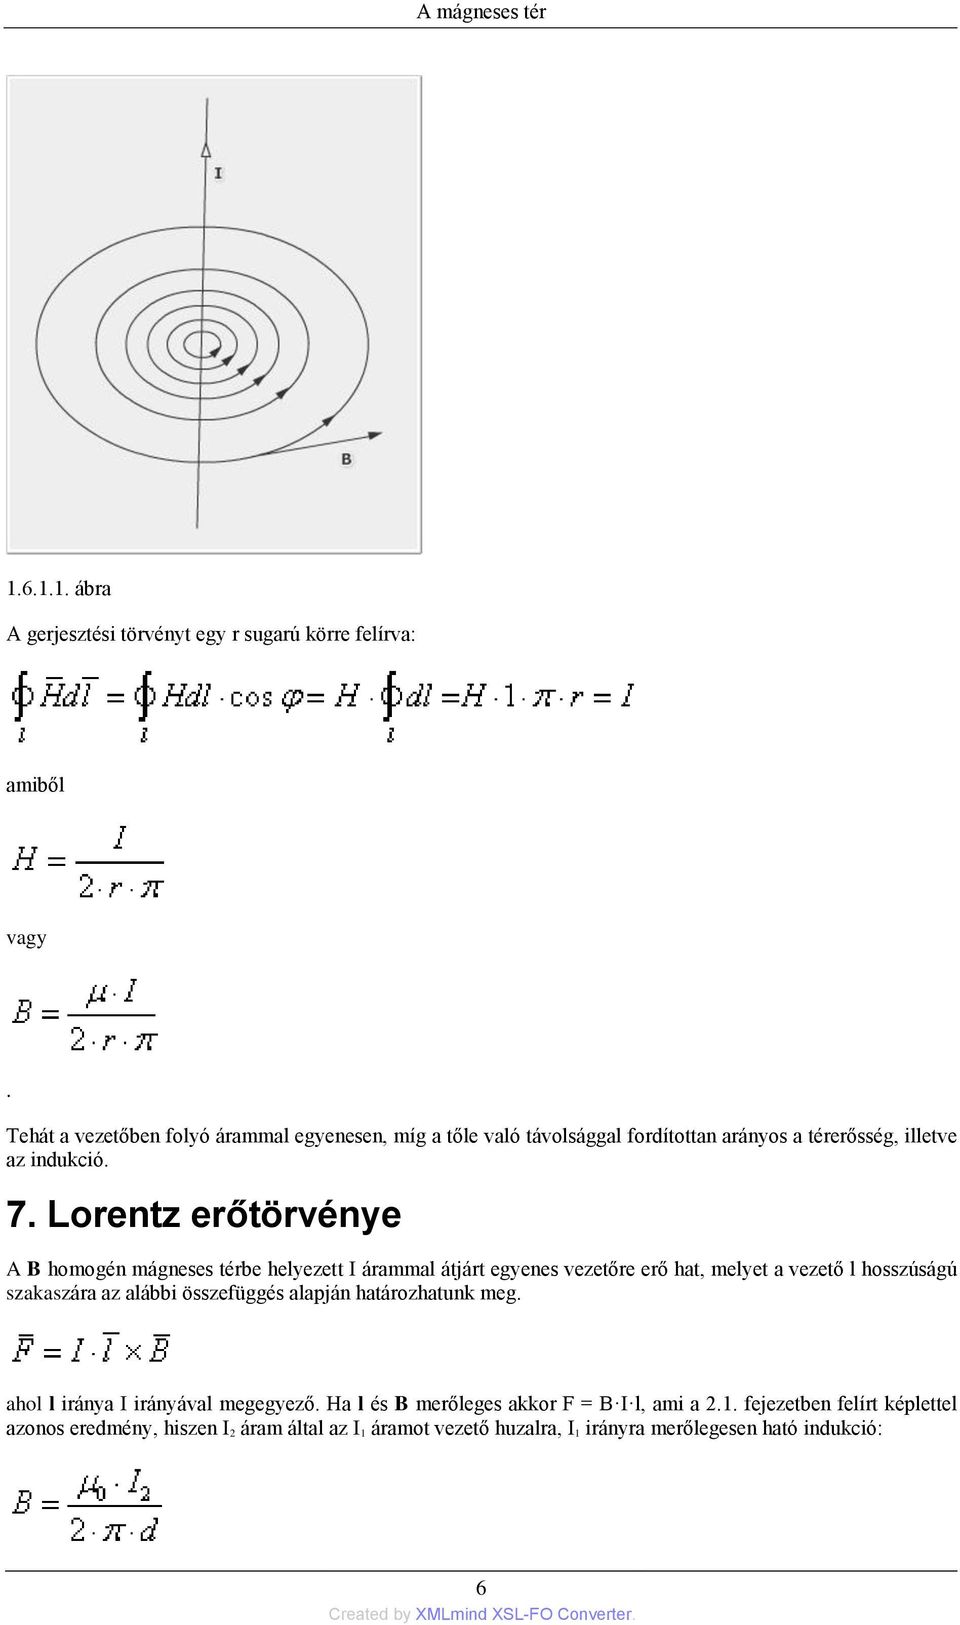 Lorentz erőtörvénye A B homogén mágneses térbe helyezett I árammal átjárt egyenes vezetőre erő hat, melyet a vezető l hosszúságú szakaszára az alábbi